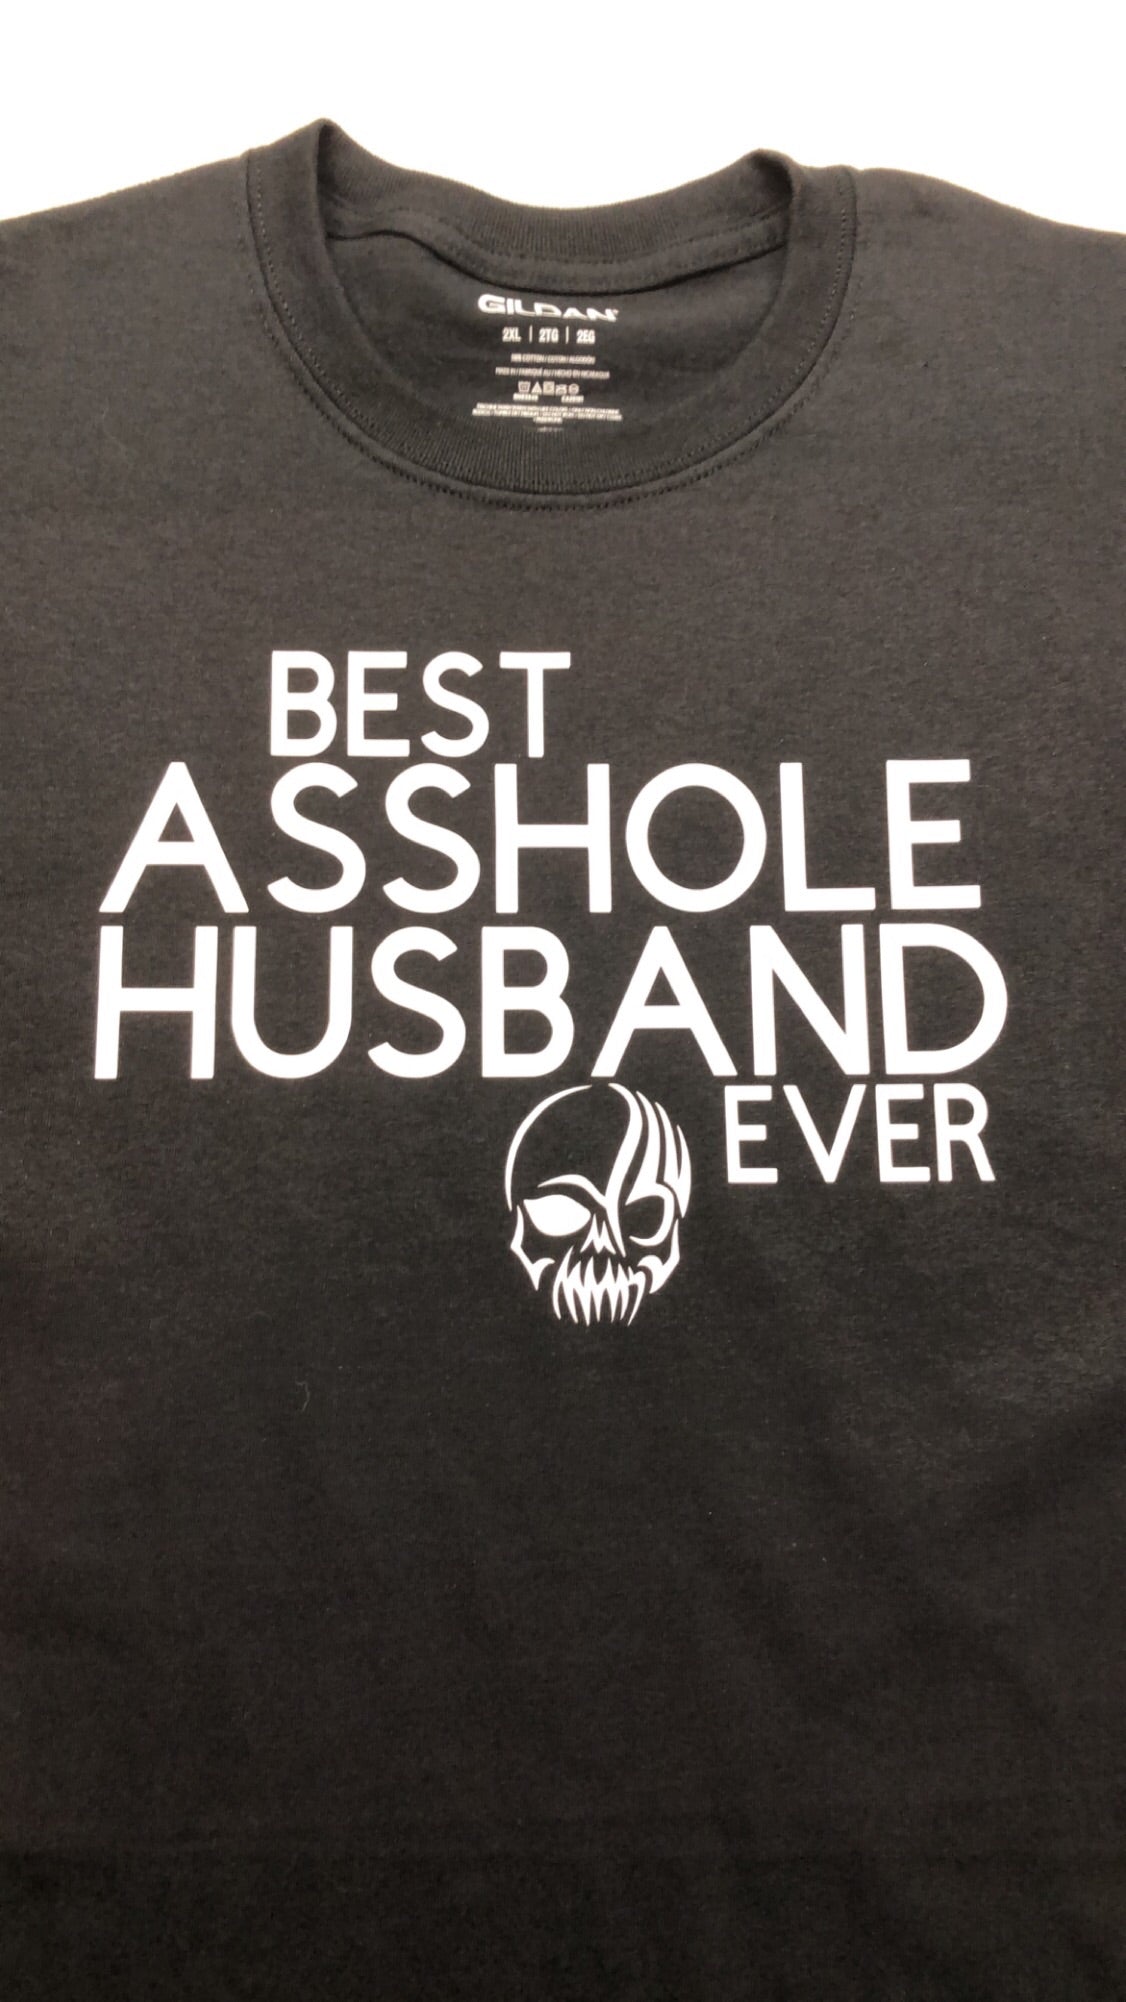 Best asshole husband ever t shirt